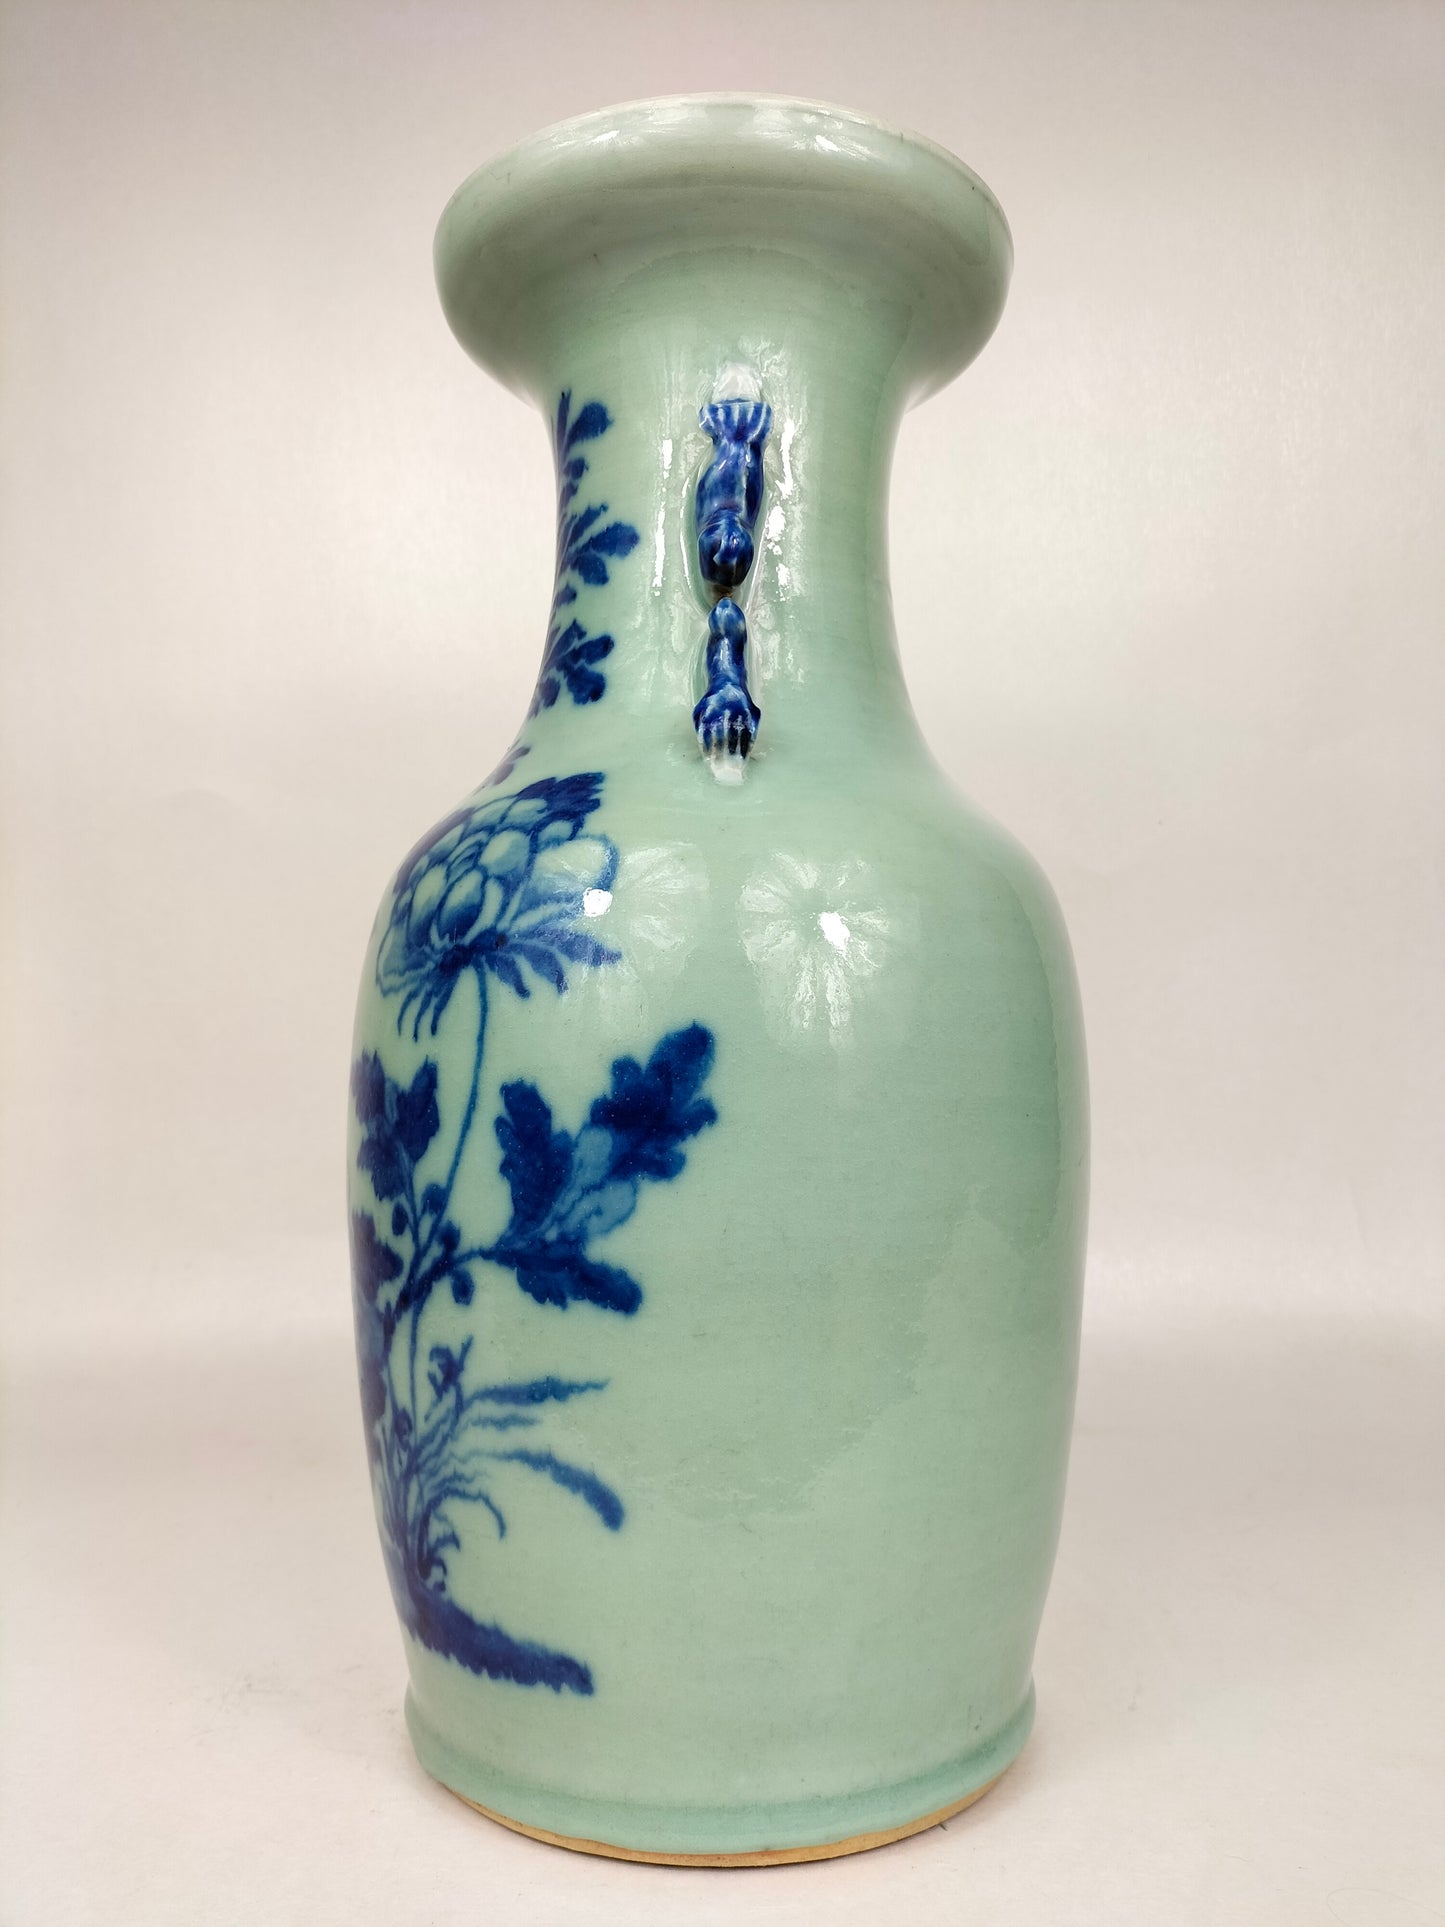 古董中国青瓷彩色花瓶//清朝 - 19 世纪